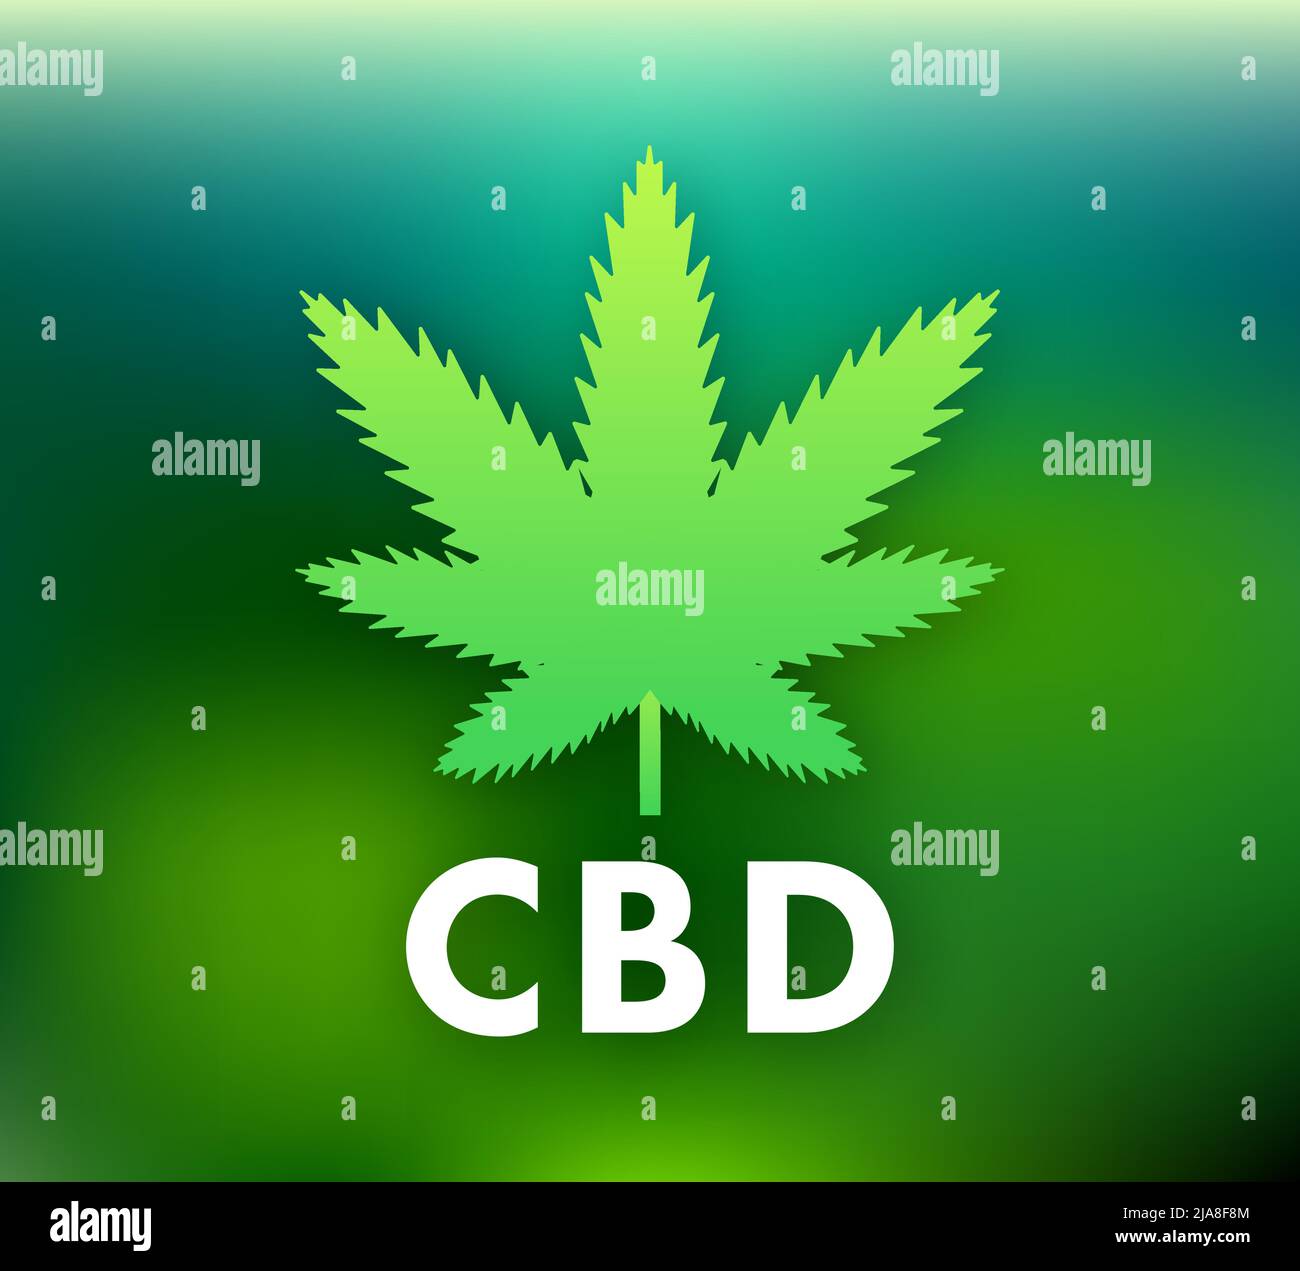 Creative cannabis leaf vector logo icon. Template for CBD Cannabidiol. Vector illustration. Stock Vector